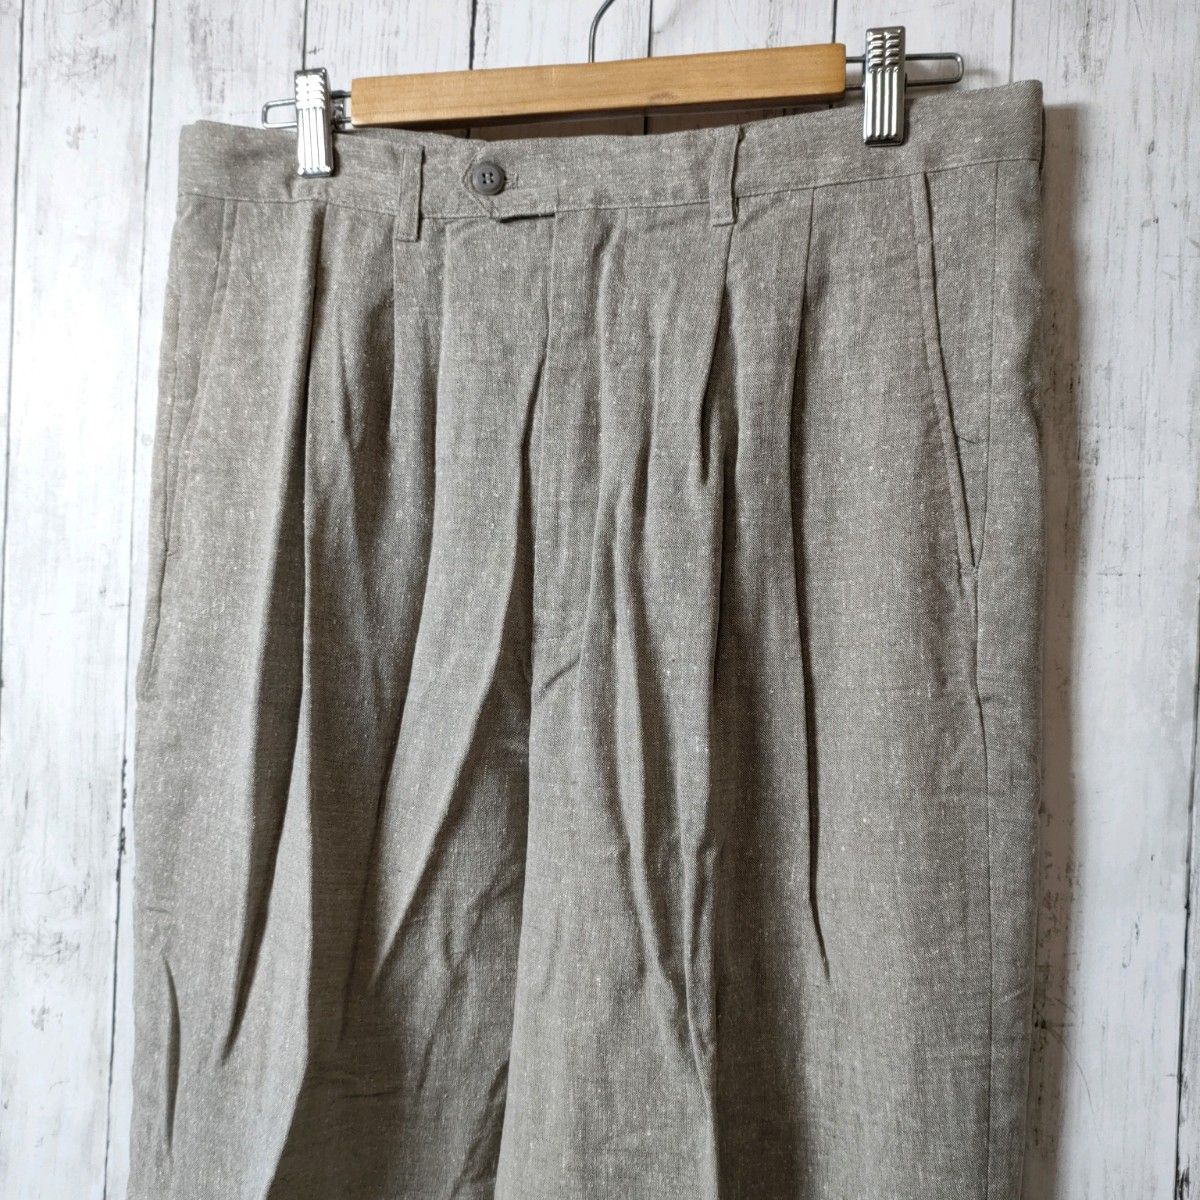 【未使用】Jasmi ジャスミ シルク SILK ズボン パンツ メンズ 灰色